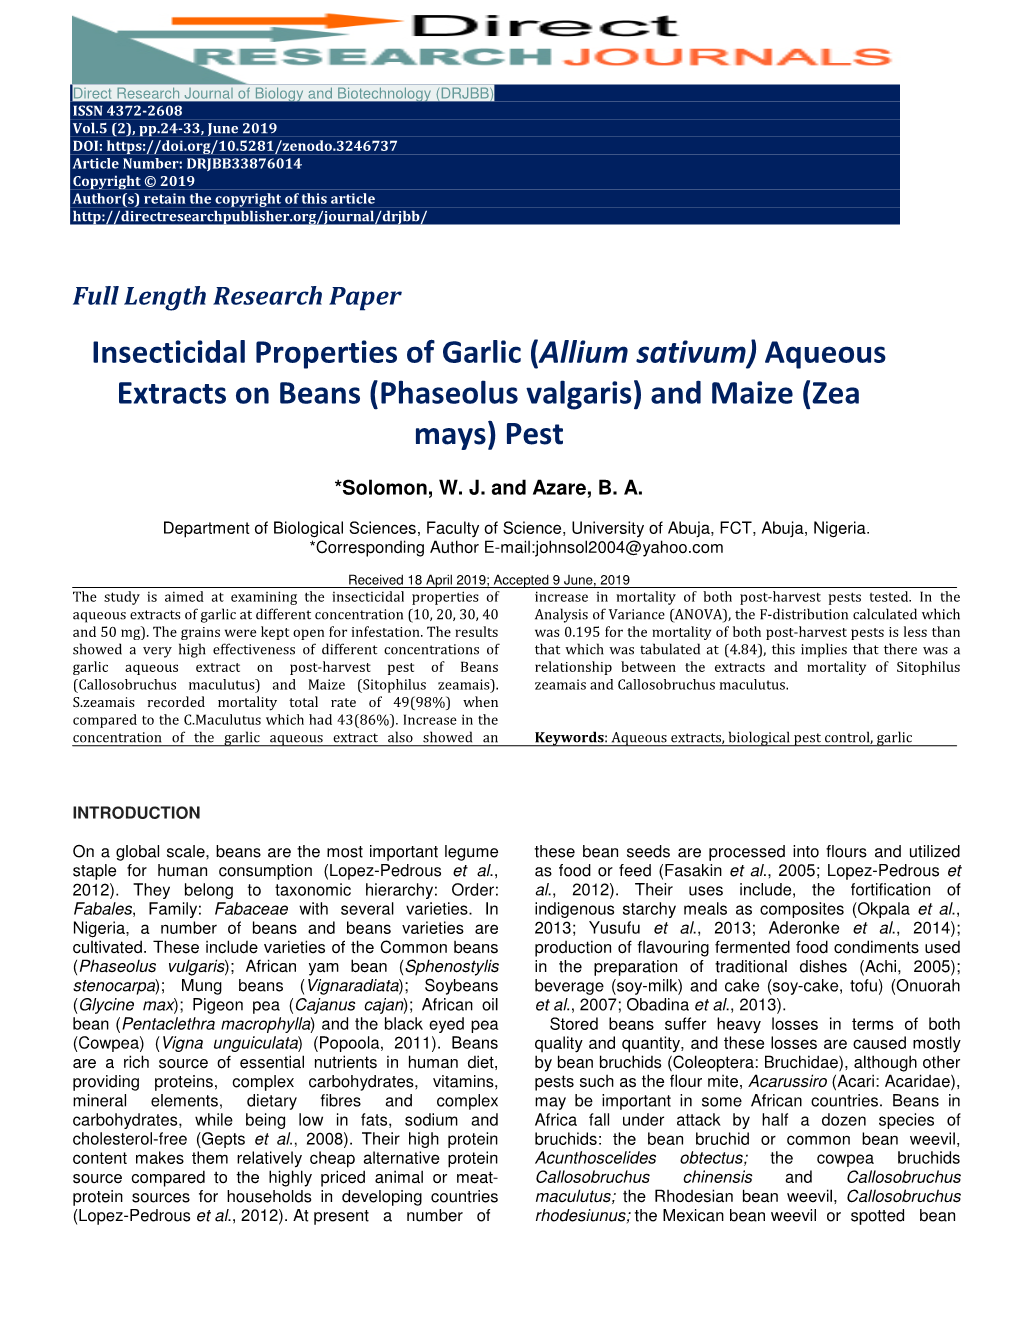 Insecticidal Properties of Garlic (Allium Sativum)